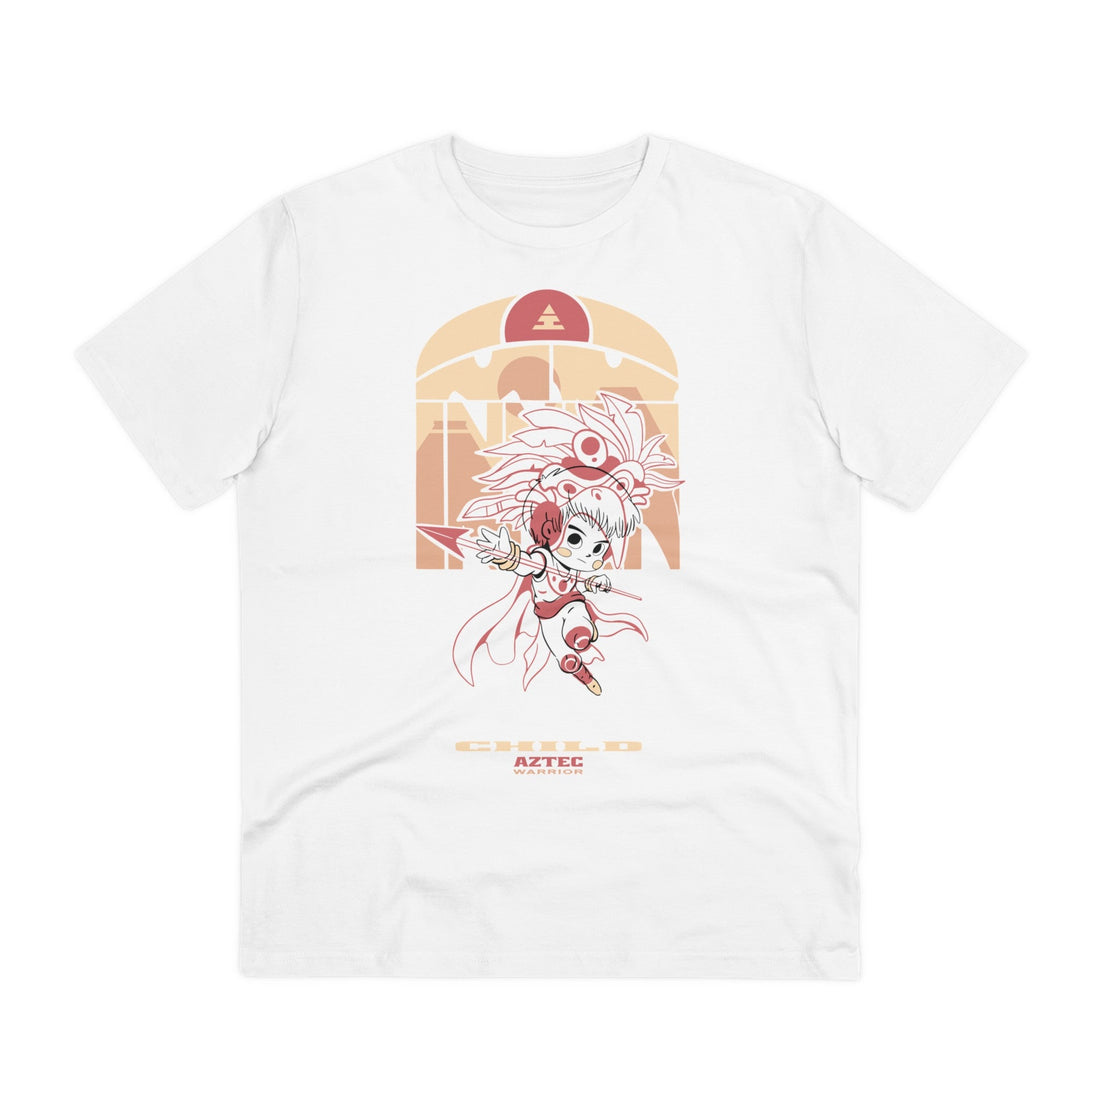 Printify T-Shirt White / 2XS Aztec Warrior Child - Warrior Kids - Front Design